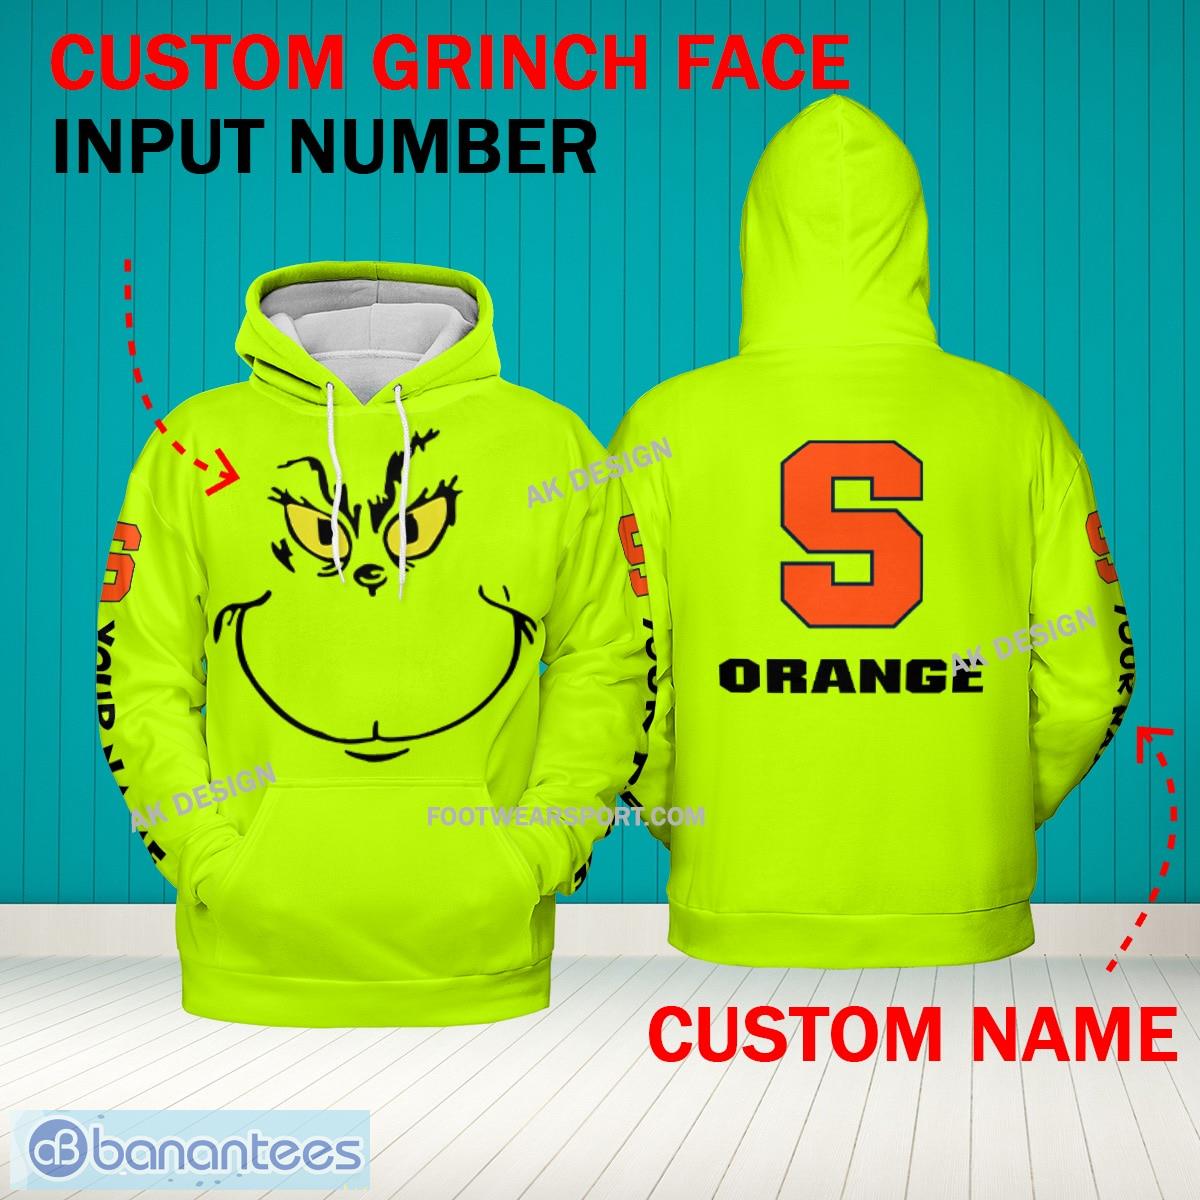 Grinch Face Syracuse Orange 3D Hoodie, Zip Hoodie, Sweater Green AOP Custom Number And Name - Grinch Face NCAA Syracuse Orange 3D Hoodie